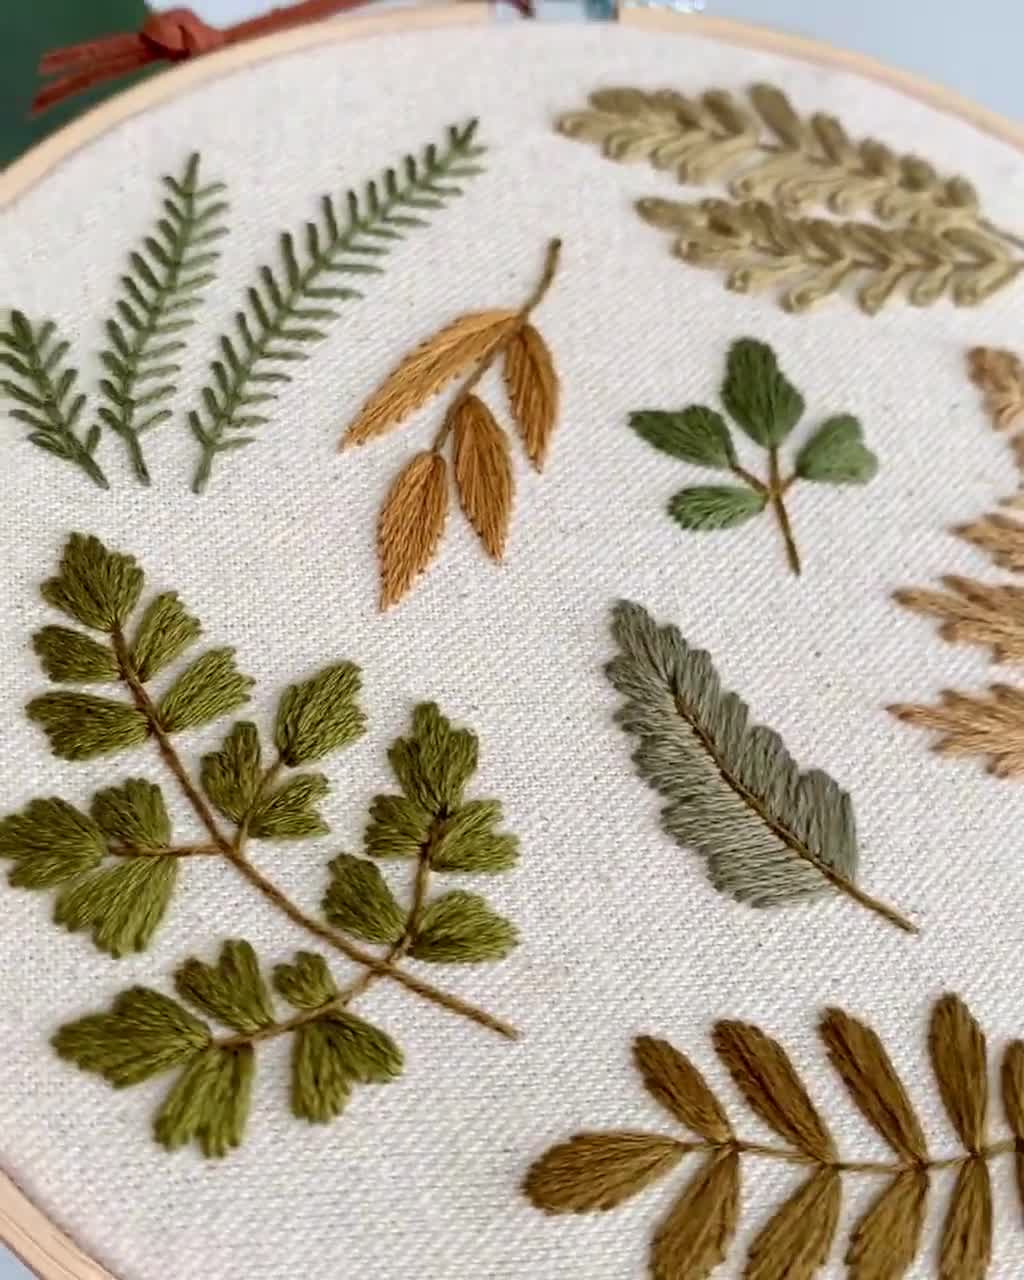 Matryoshka : Stick and Stitch Embroidery Designs - Botanical